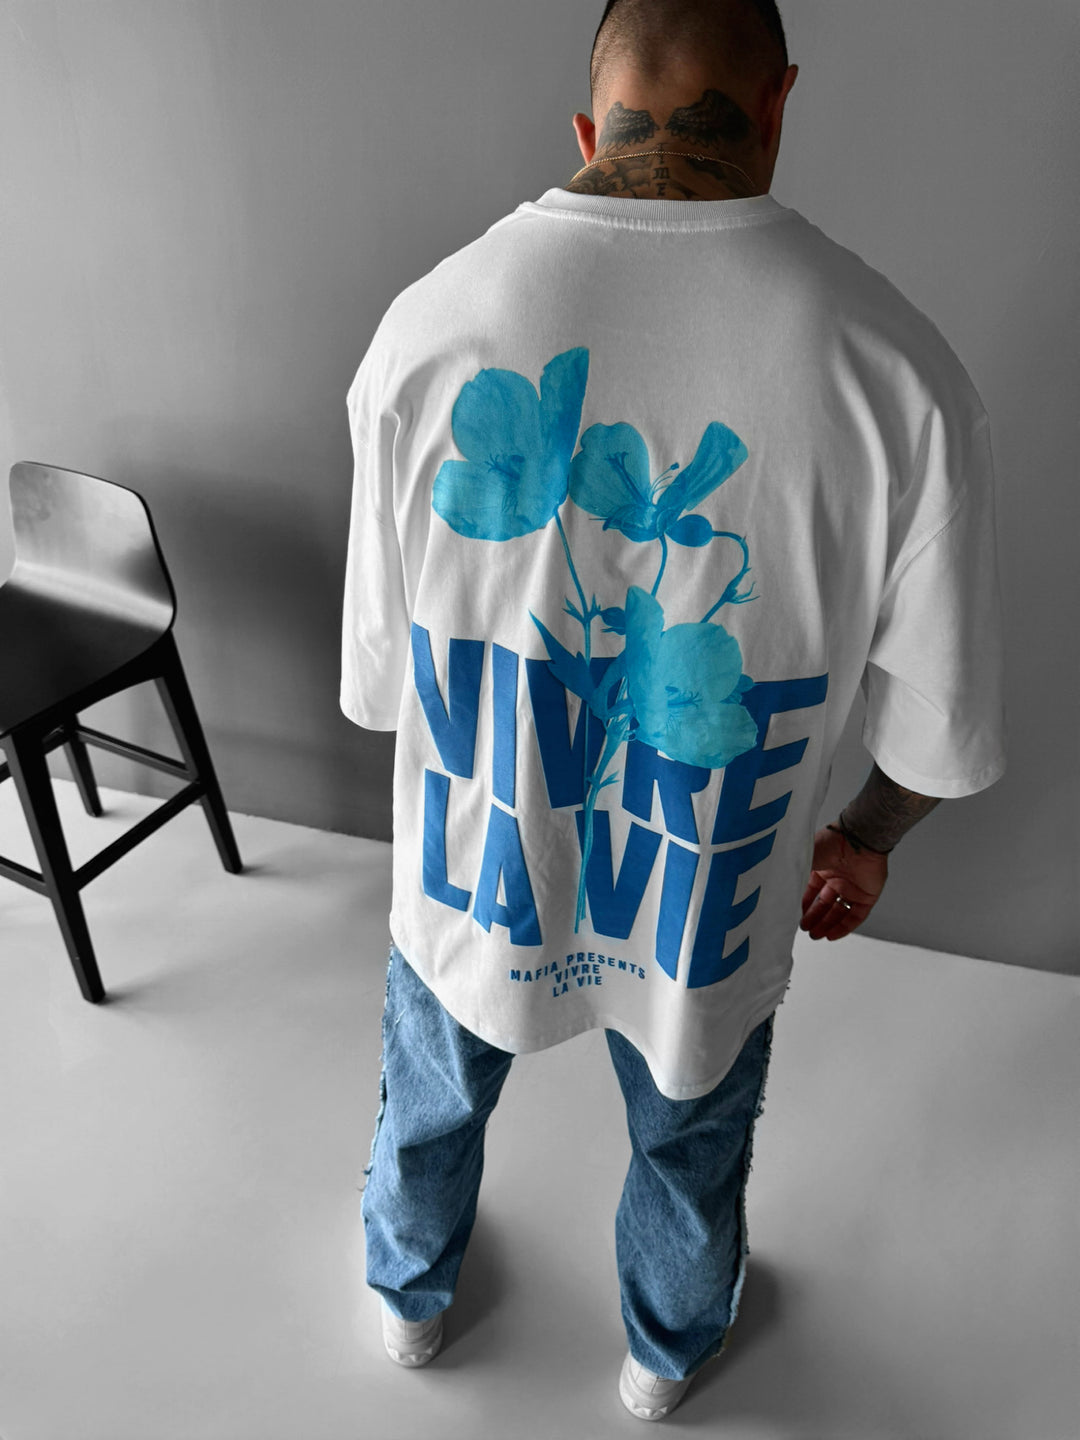 Oversize Vivre la Vie T-shirt - Ecru and Blue